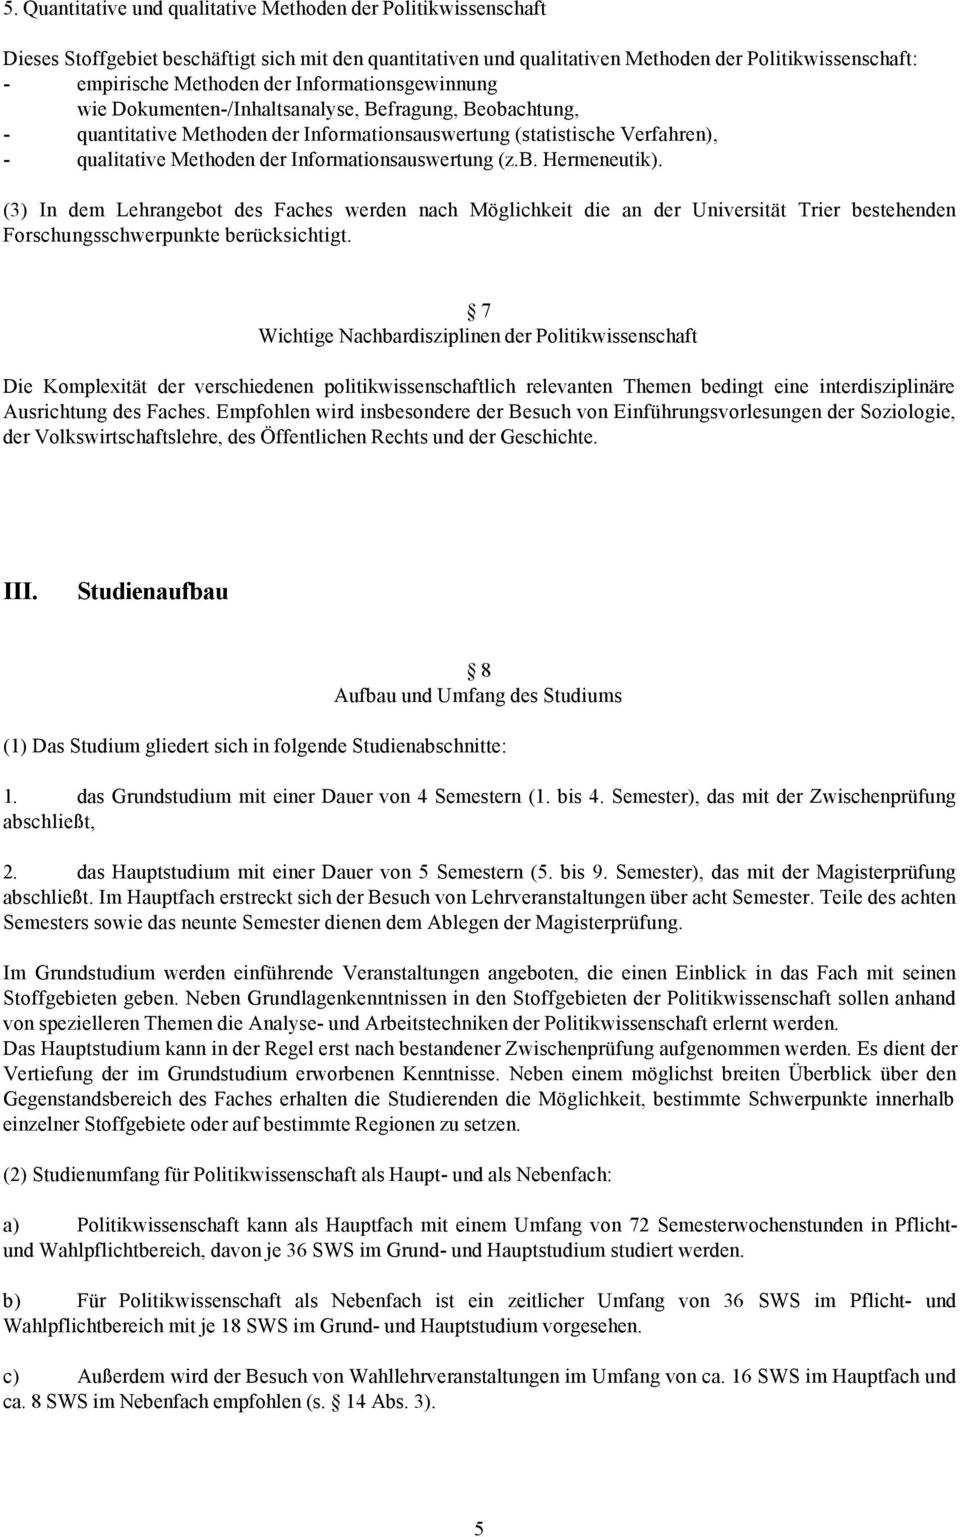 Informationsauswertung (z.b. Hermeneutik). (3) In dem Lehrangebot des Faches werden nach Möglichkeit die an der Universität Trier bestehenden Forschungsschwerpunkte berücksichtigt.